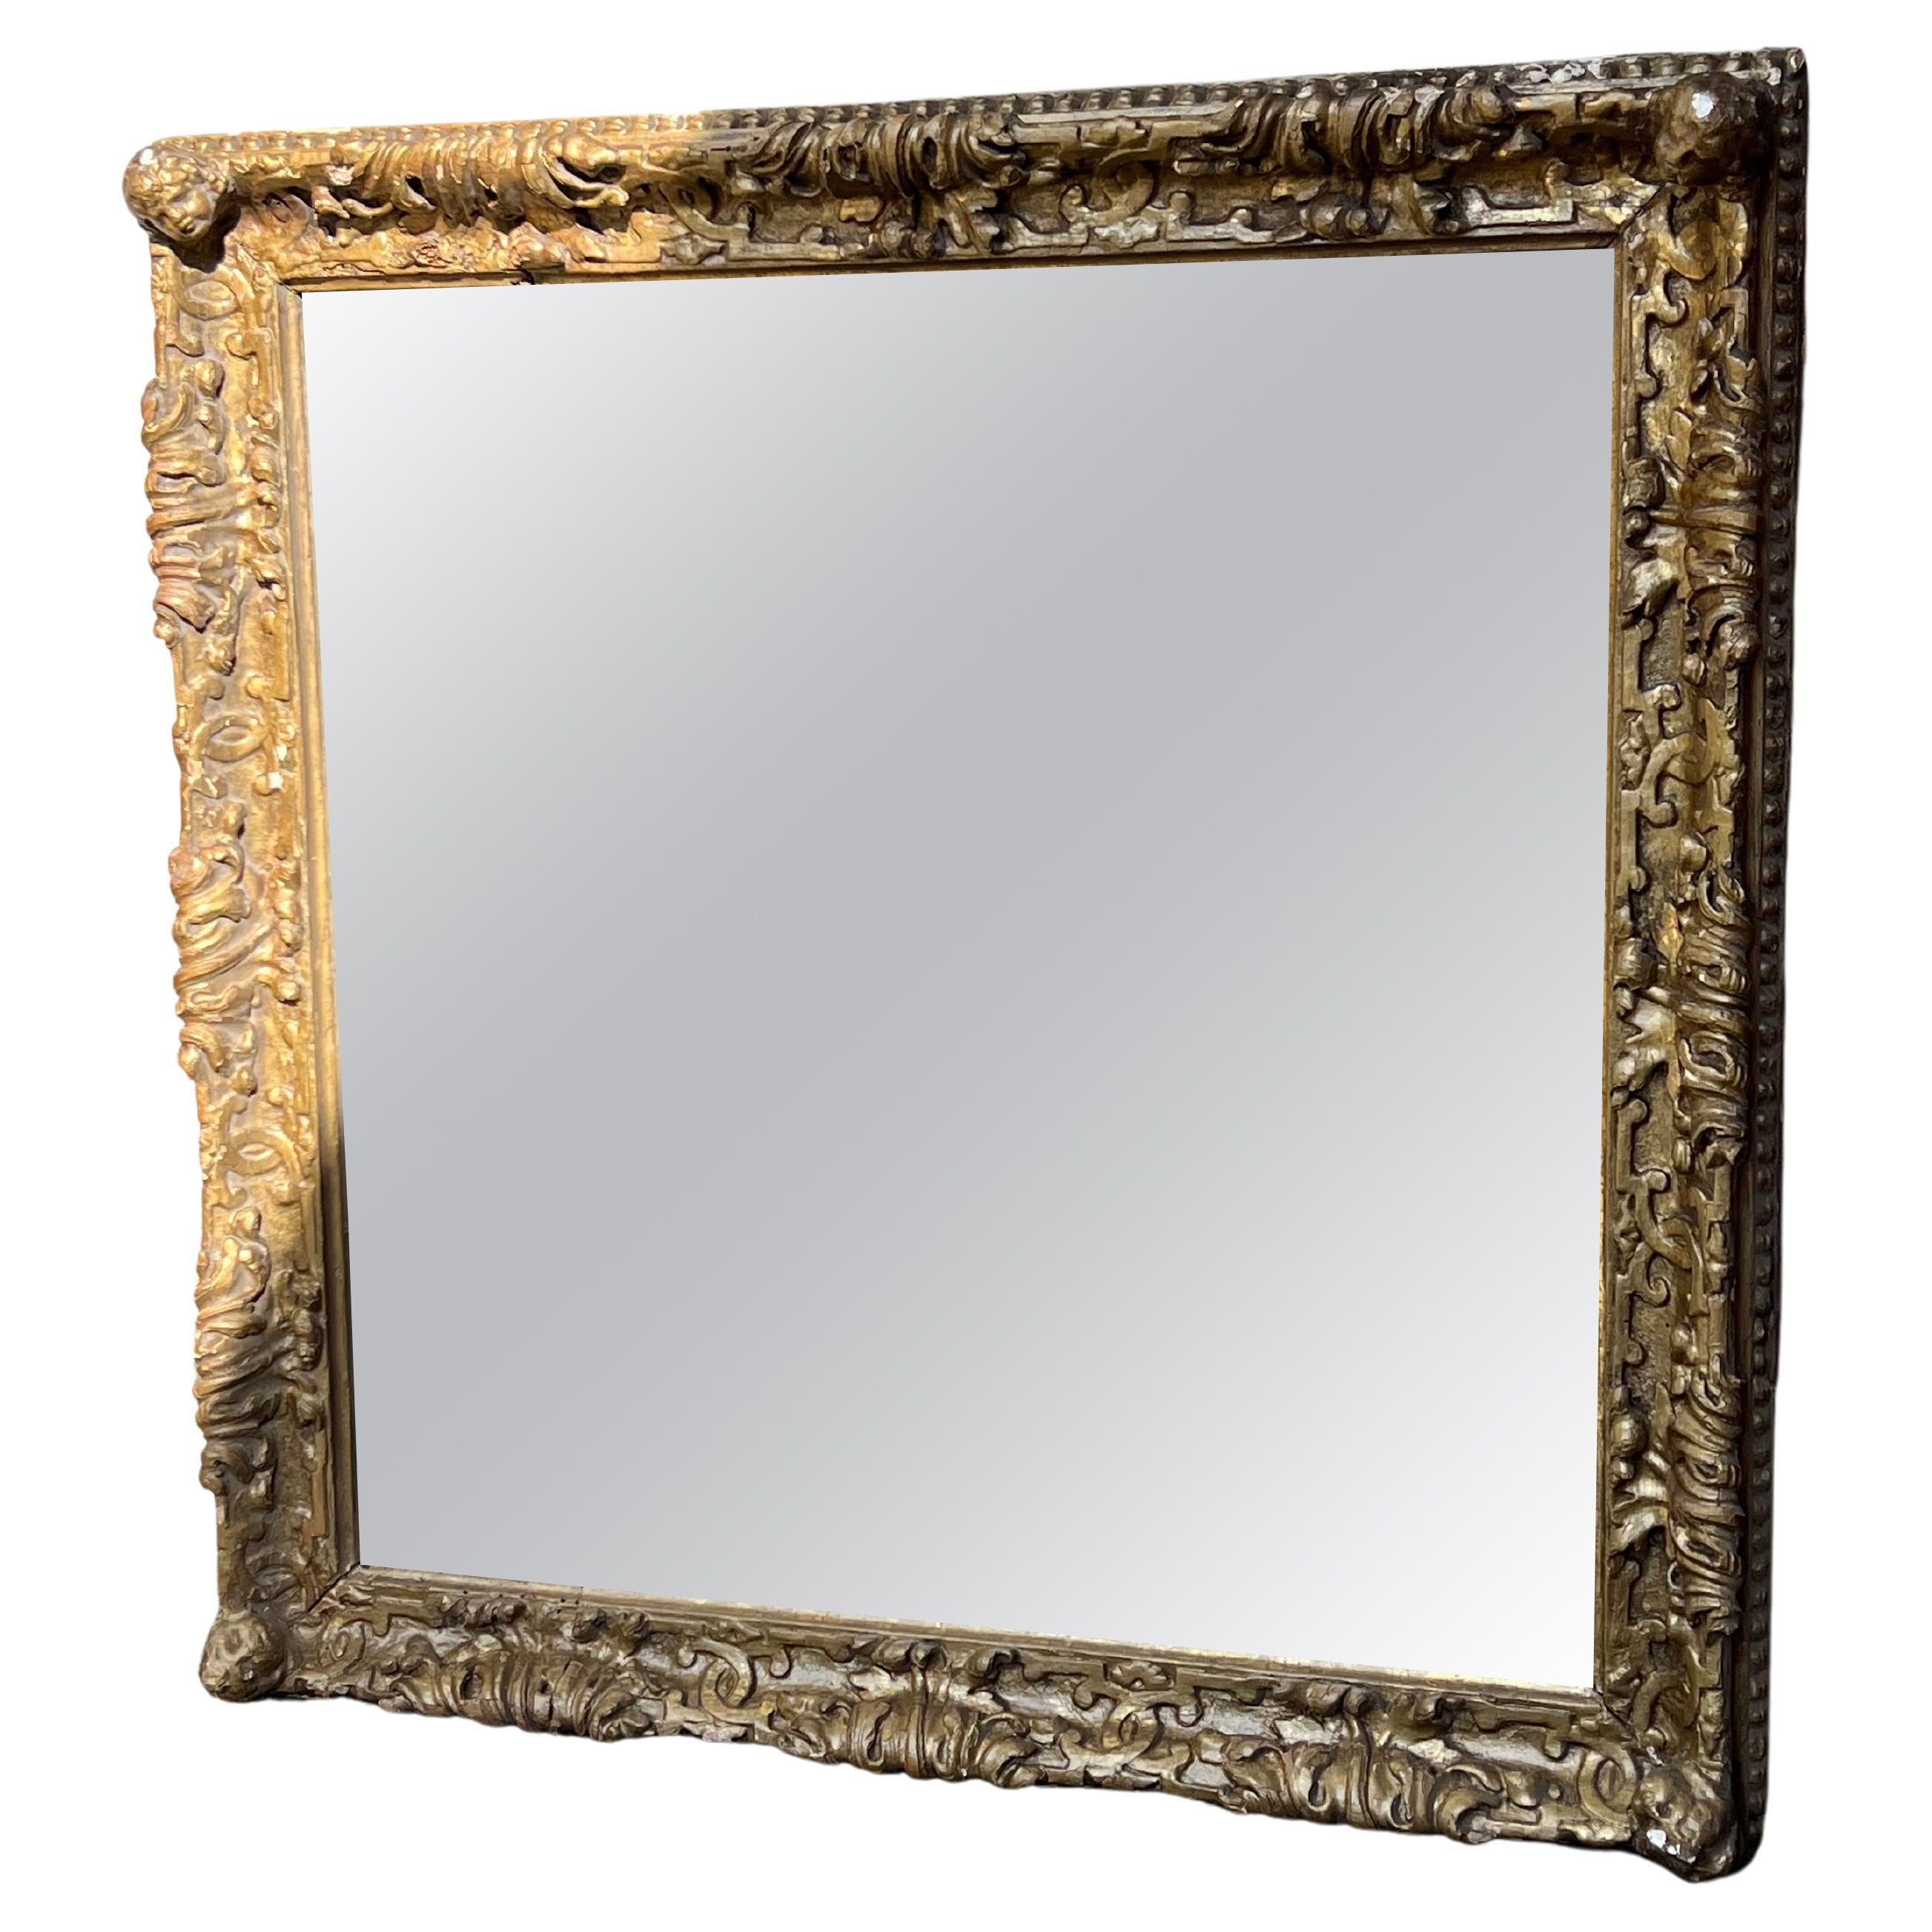 Antica Specchiera Quadrata in Oro Zecchino, Putti, Mirror, Specchiera For Sale